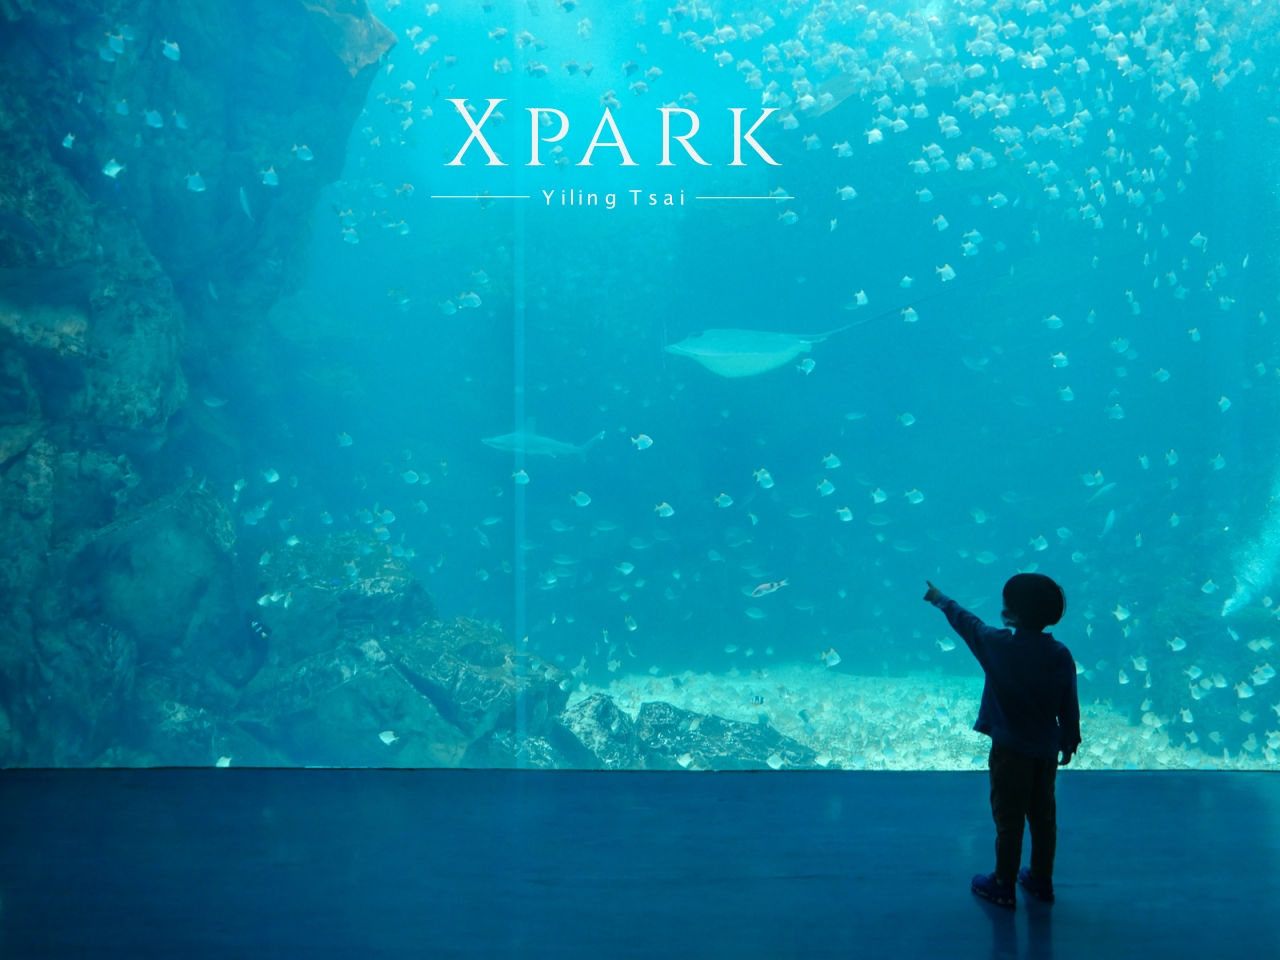 桃園景點 XPARK 都會型水生公園參觀攻略 門票優惠、交通路線、熱門展區介紹